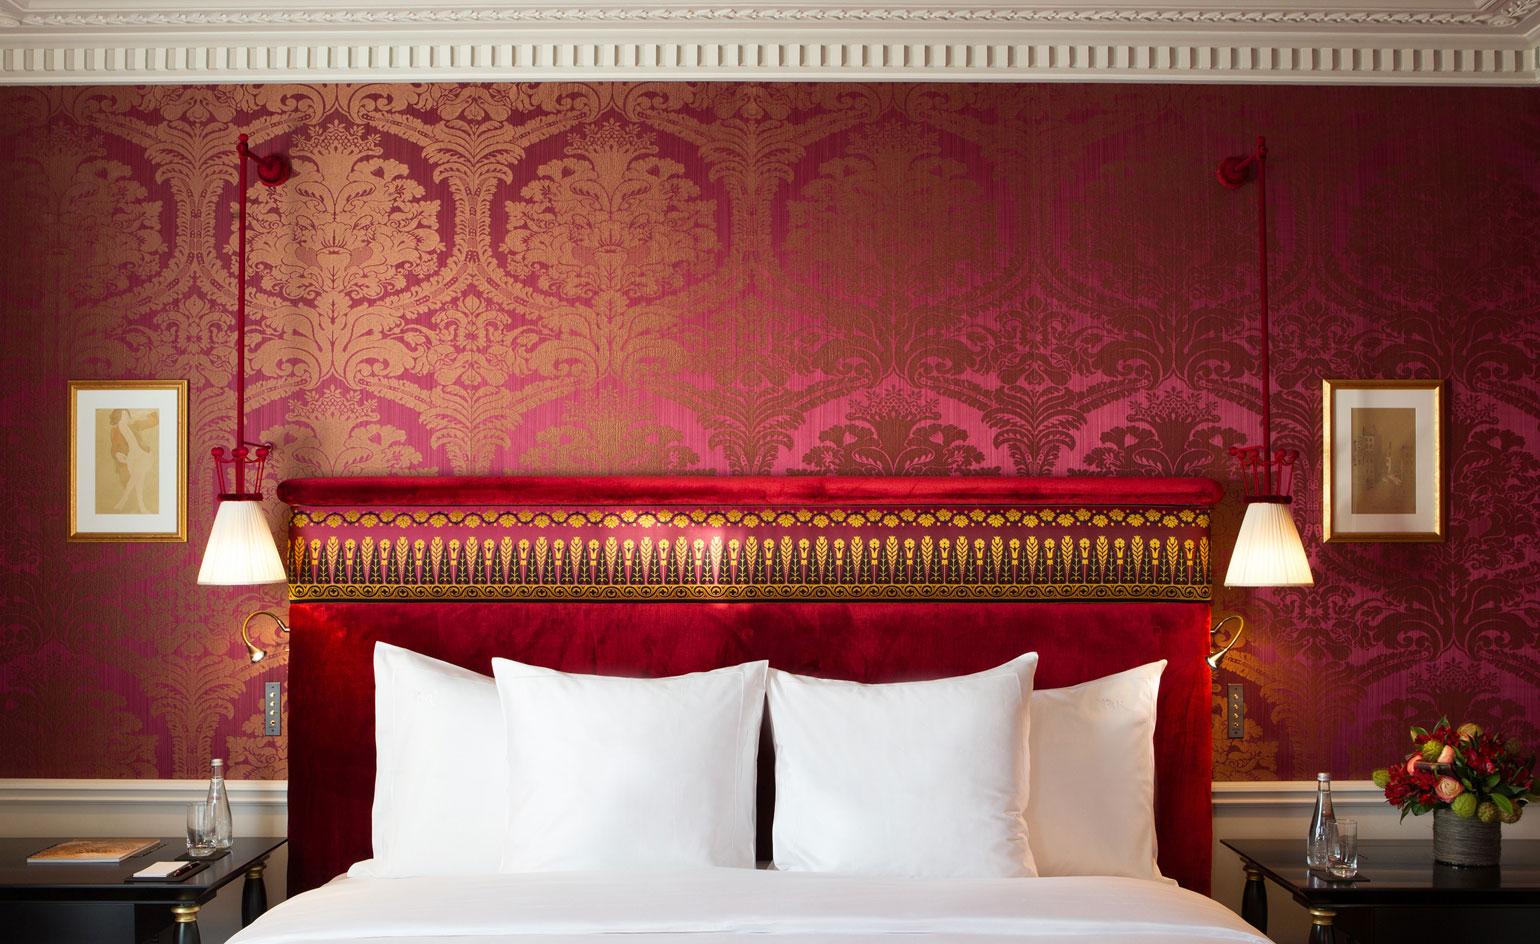 La Réserve Paris Hotel And Spa , HD Wallpaper & Backgrounds